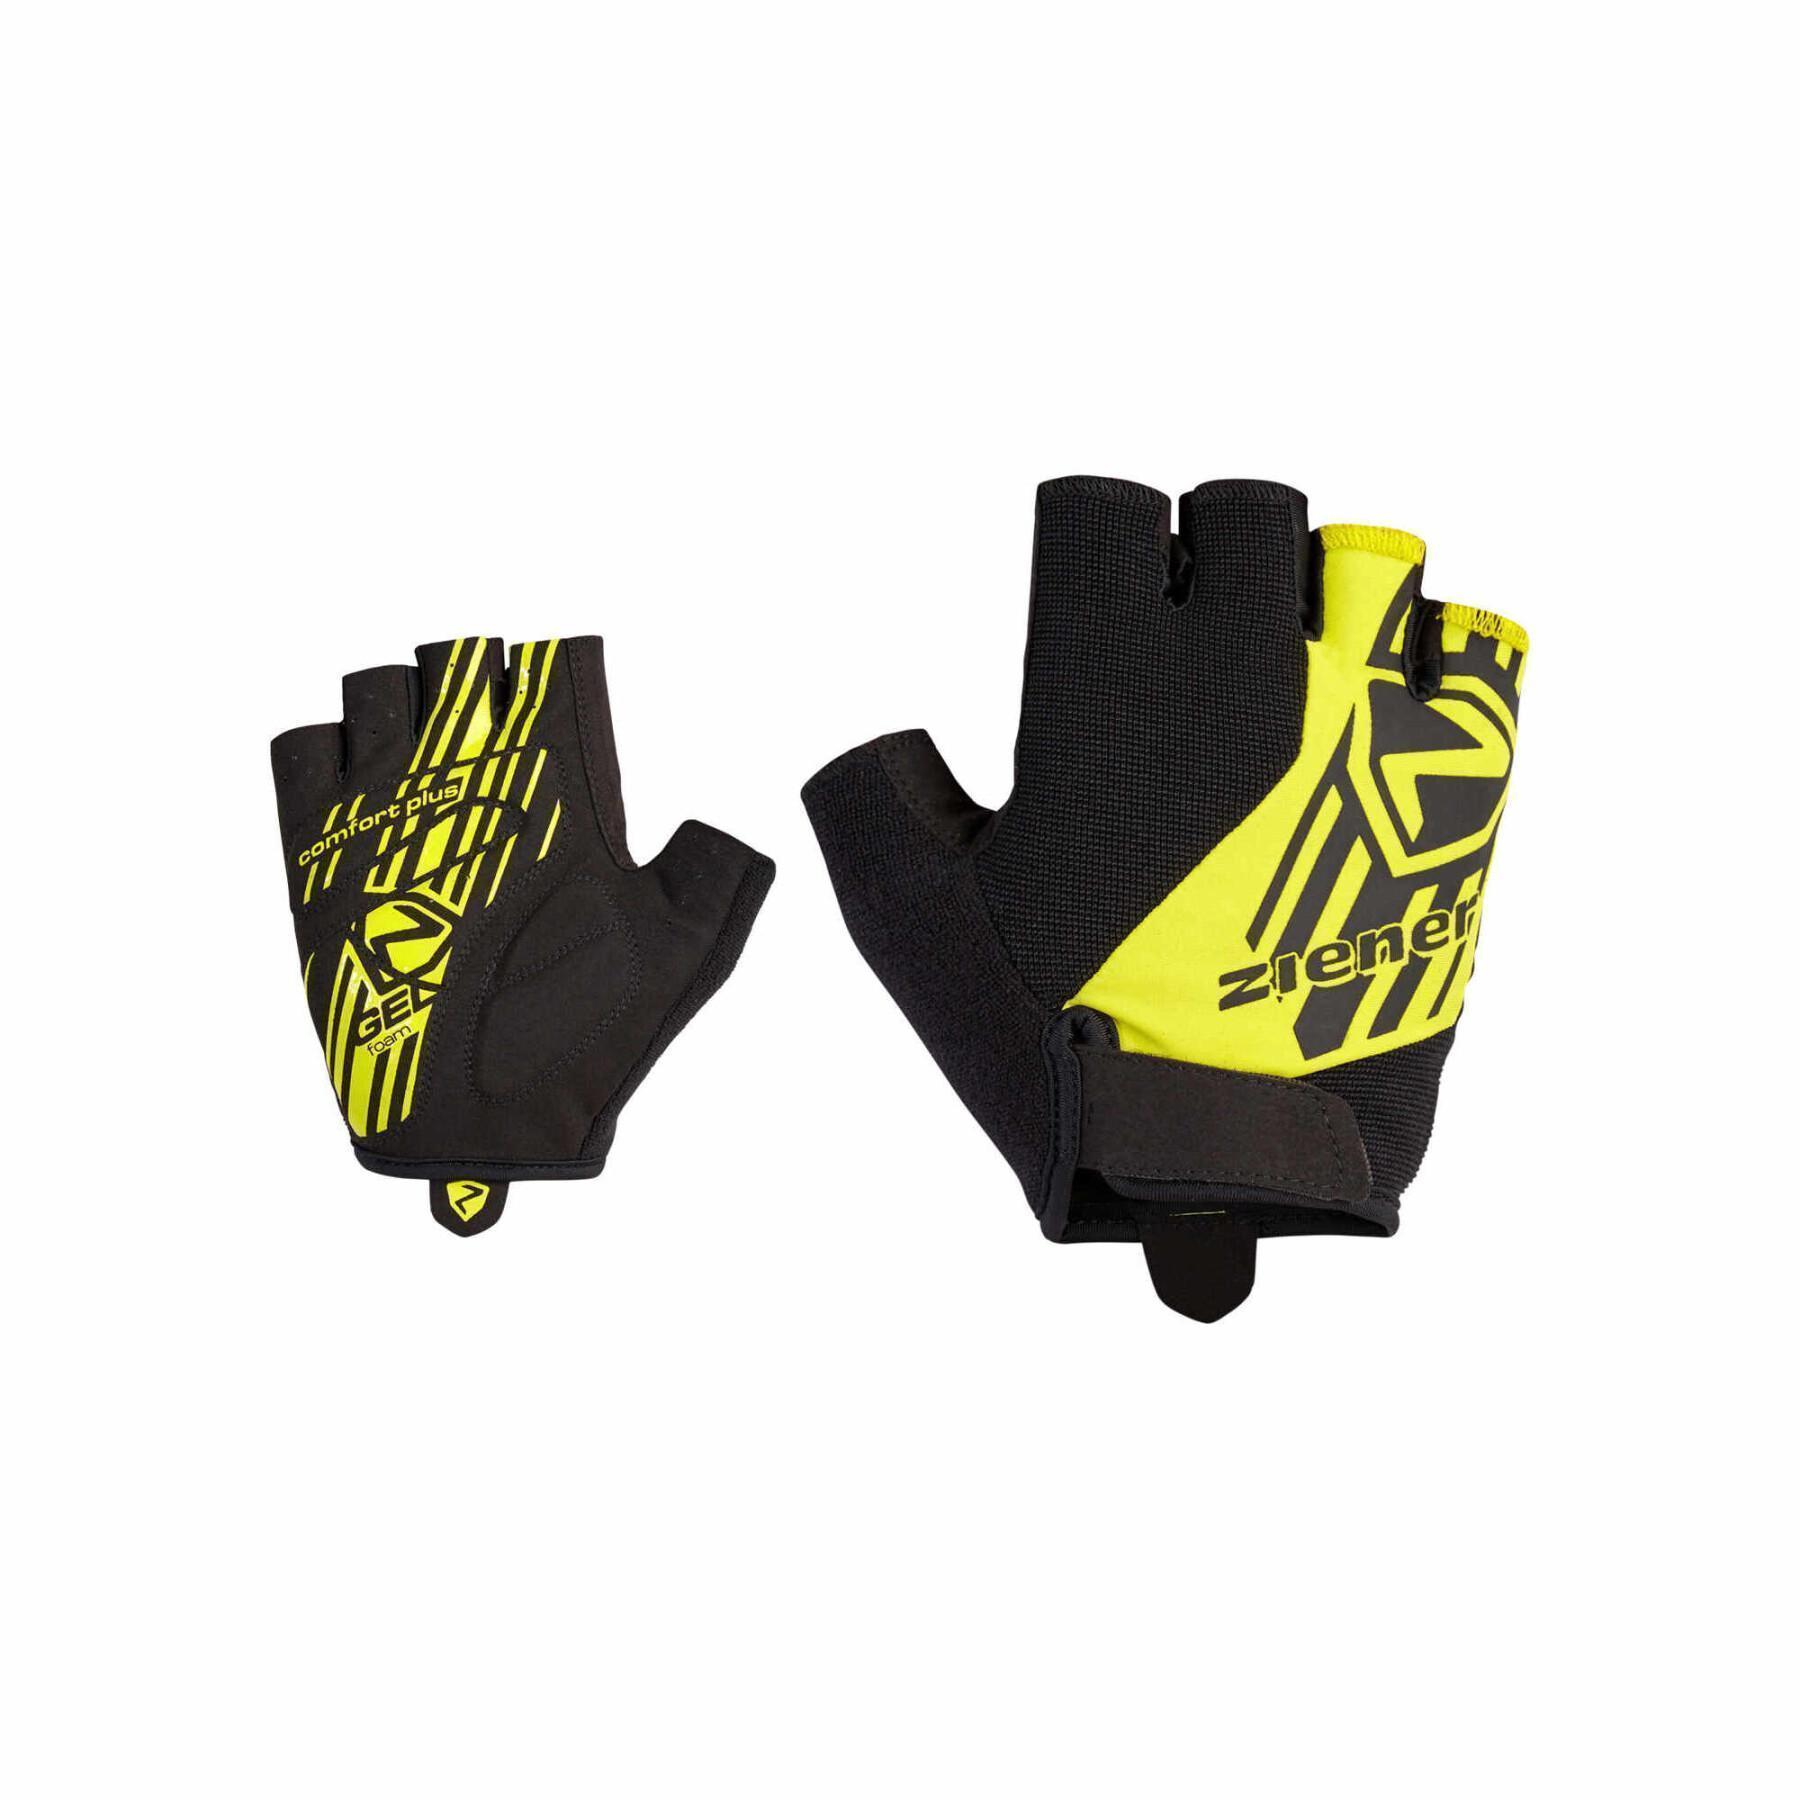 Rennrad - Ausrüstung Crispin Handschuhen Handschuhe Ziener - - Kurze